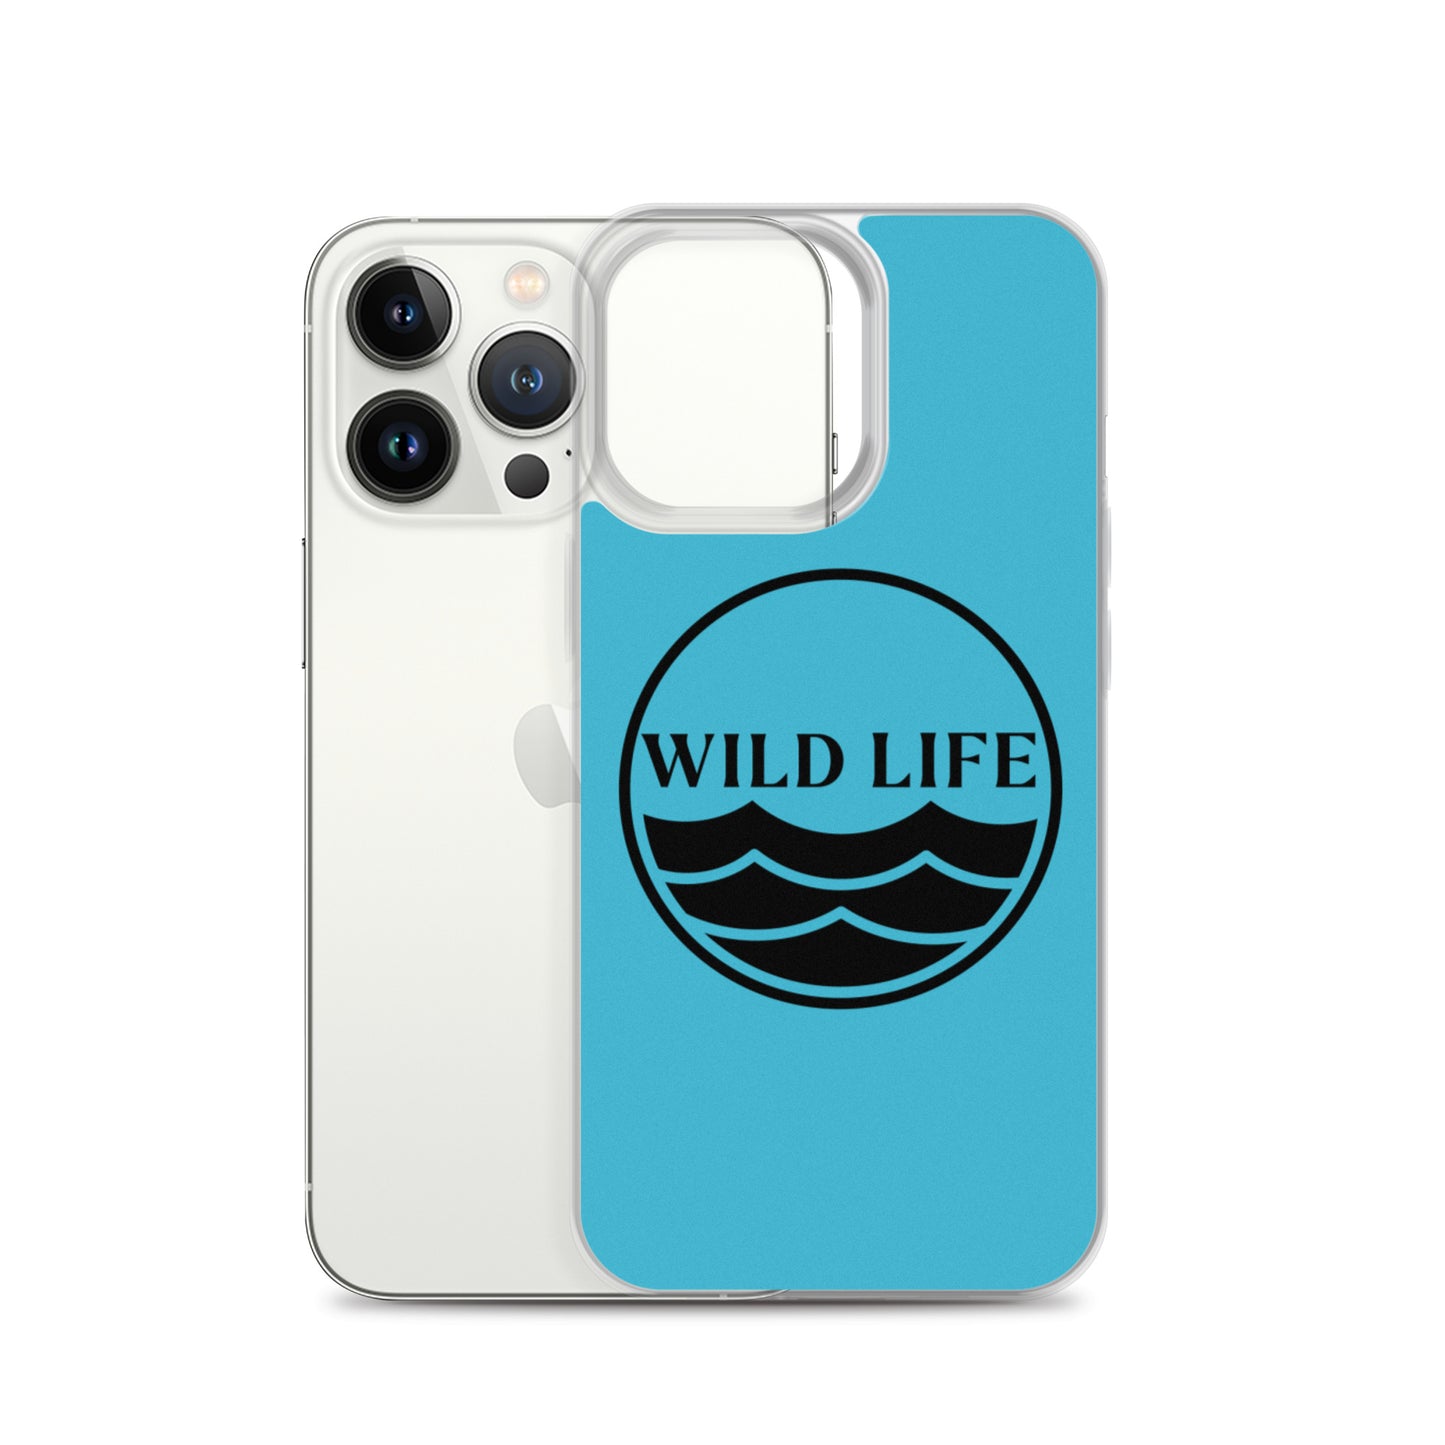 WILD LIFE  iPhone Case - Sky